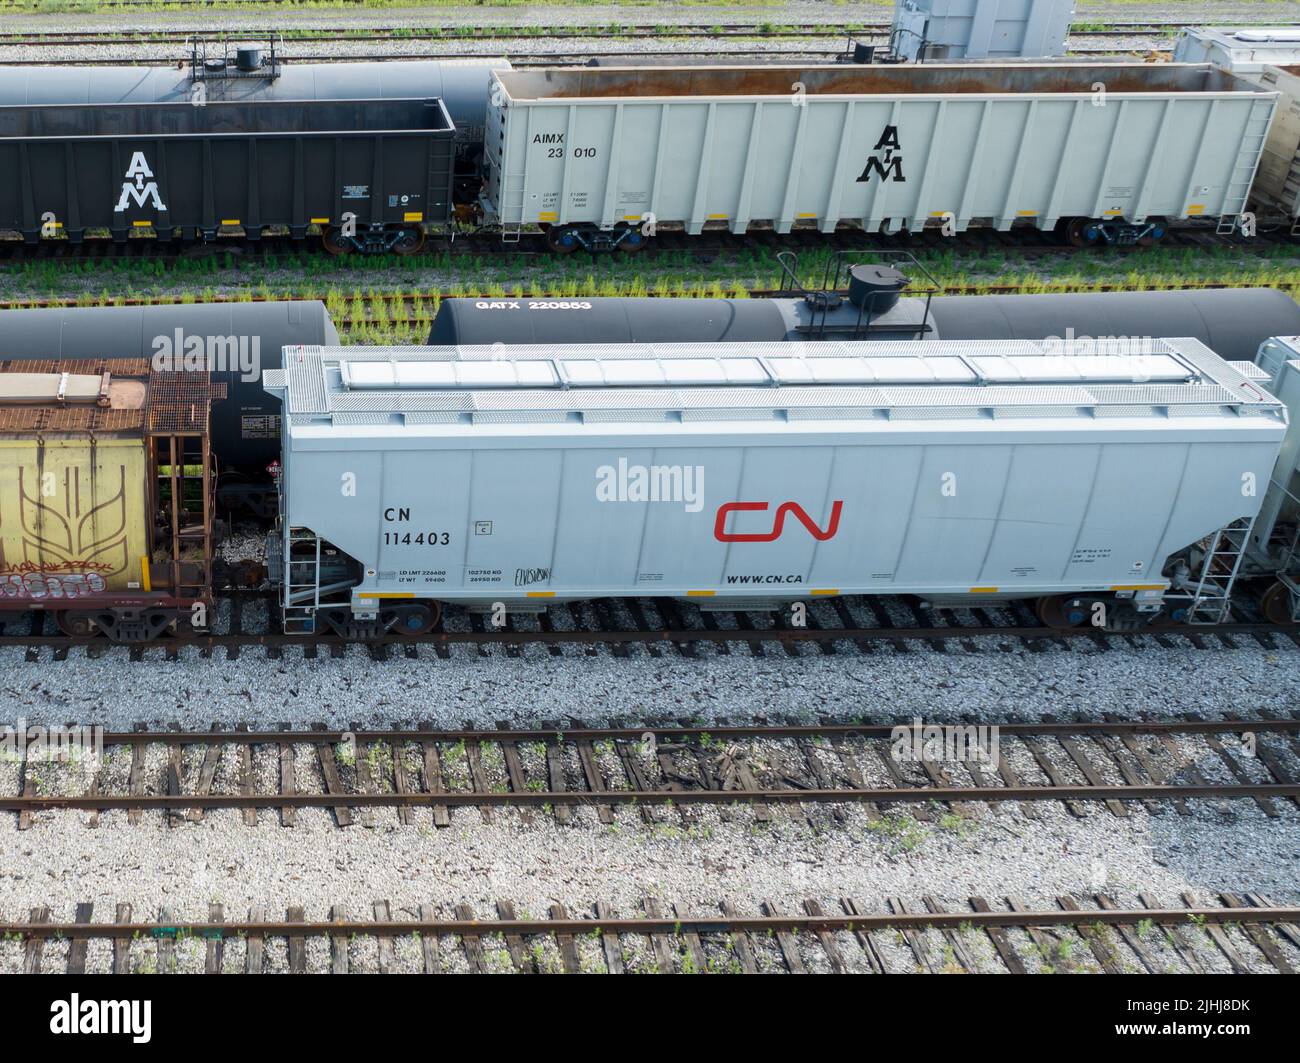 Una nuova ferrovia CN Rail (Canadian National Railway) è visibile mentre si ferma in un grande railyard durante il giorno. Foto Stock